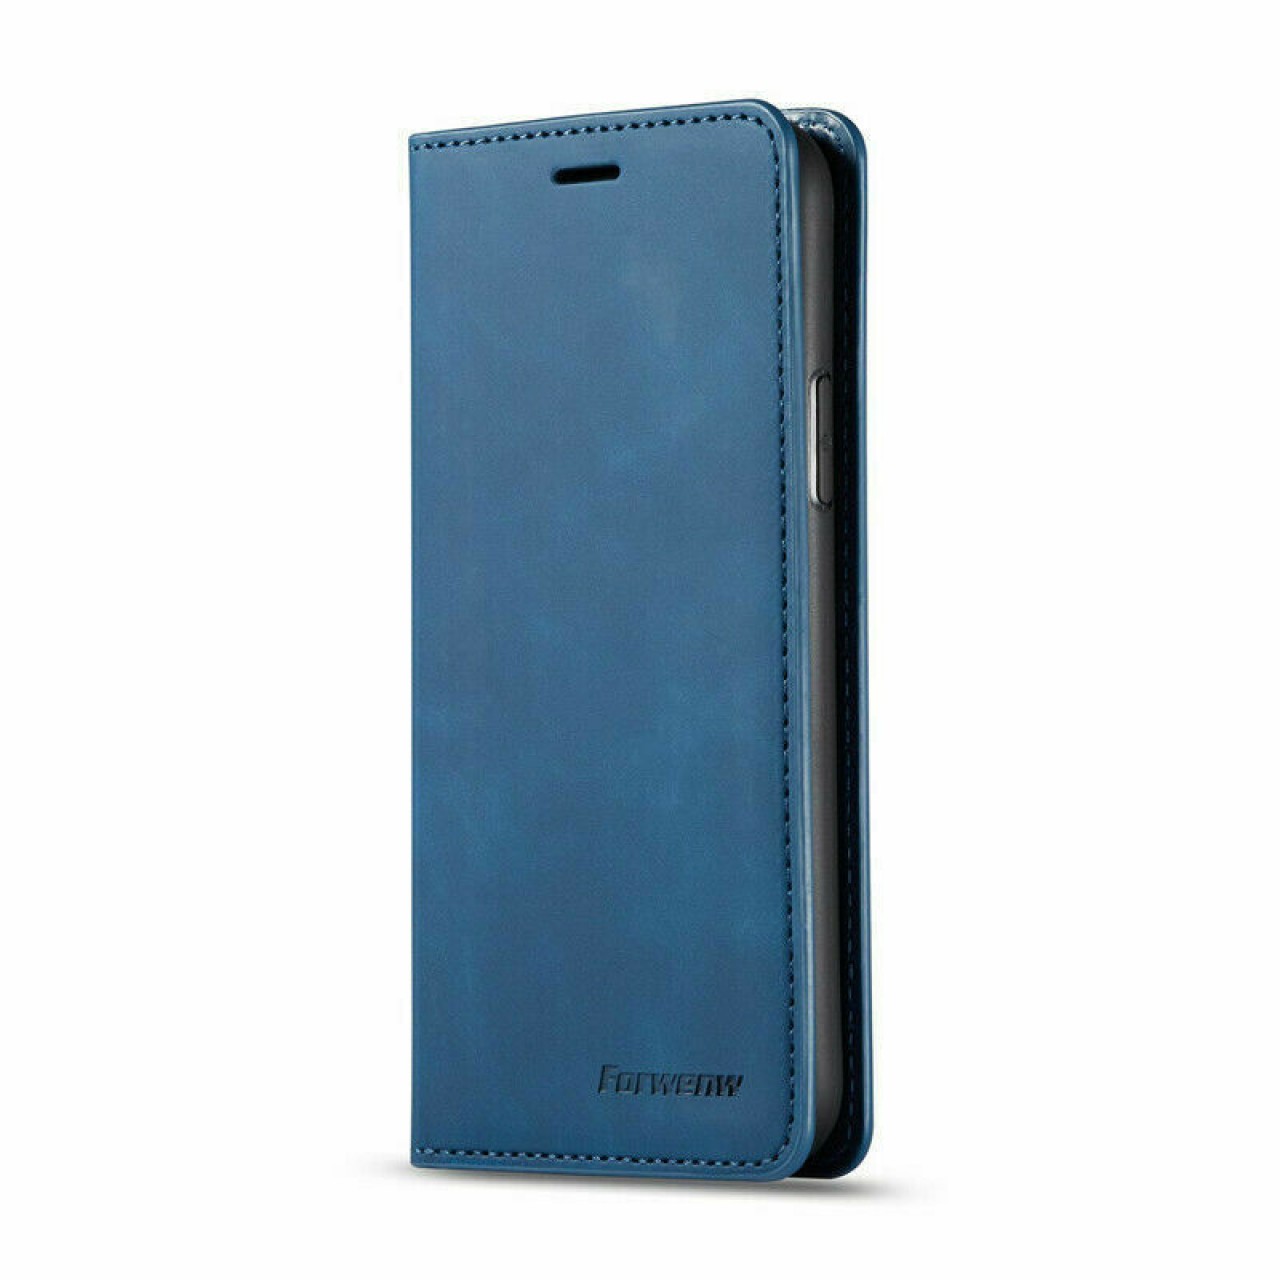 Samsung Galaxy Note 9 Θήκη Κινητού Μαγνητική - Mobile Case Leather Book Forwenw Blue